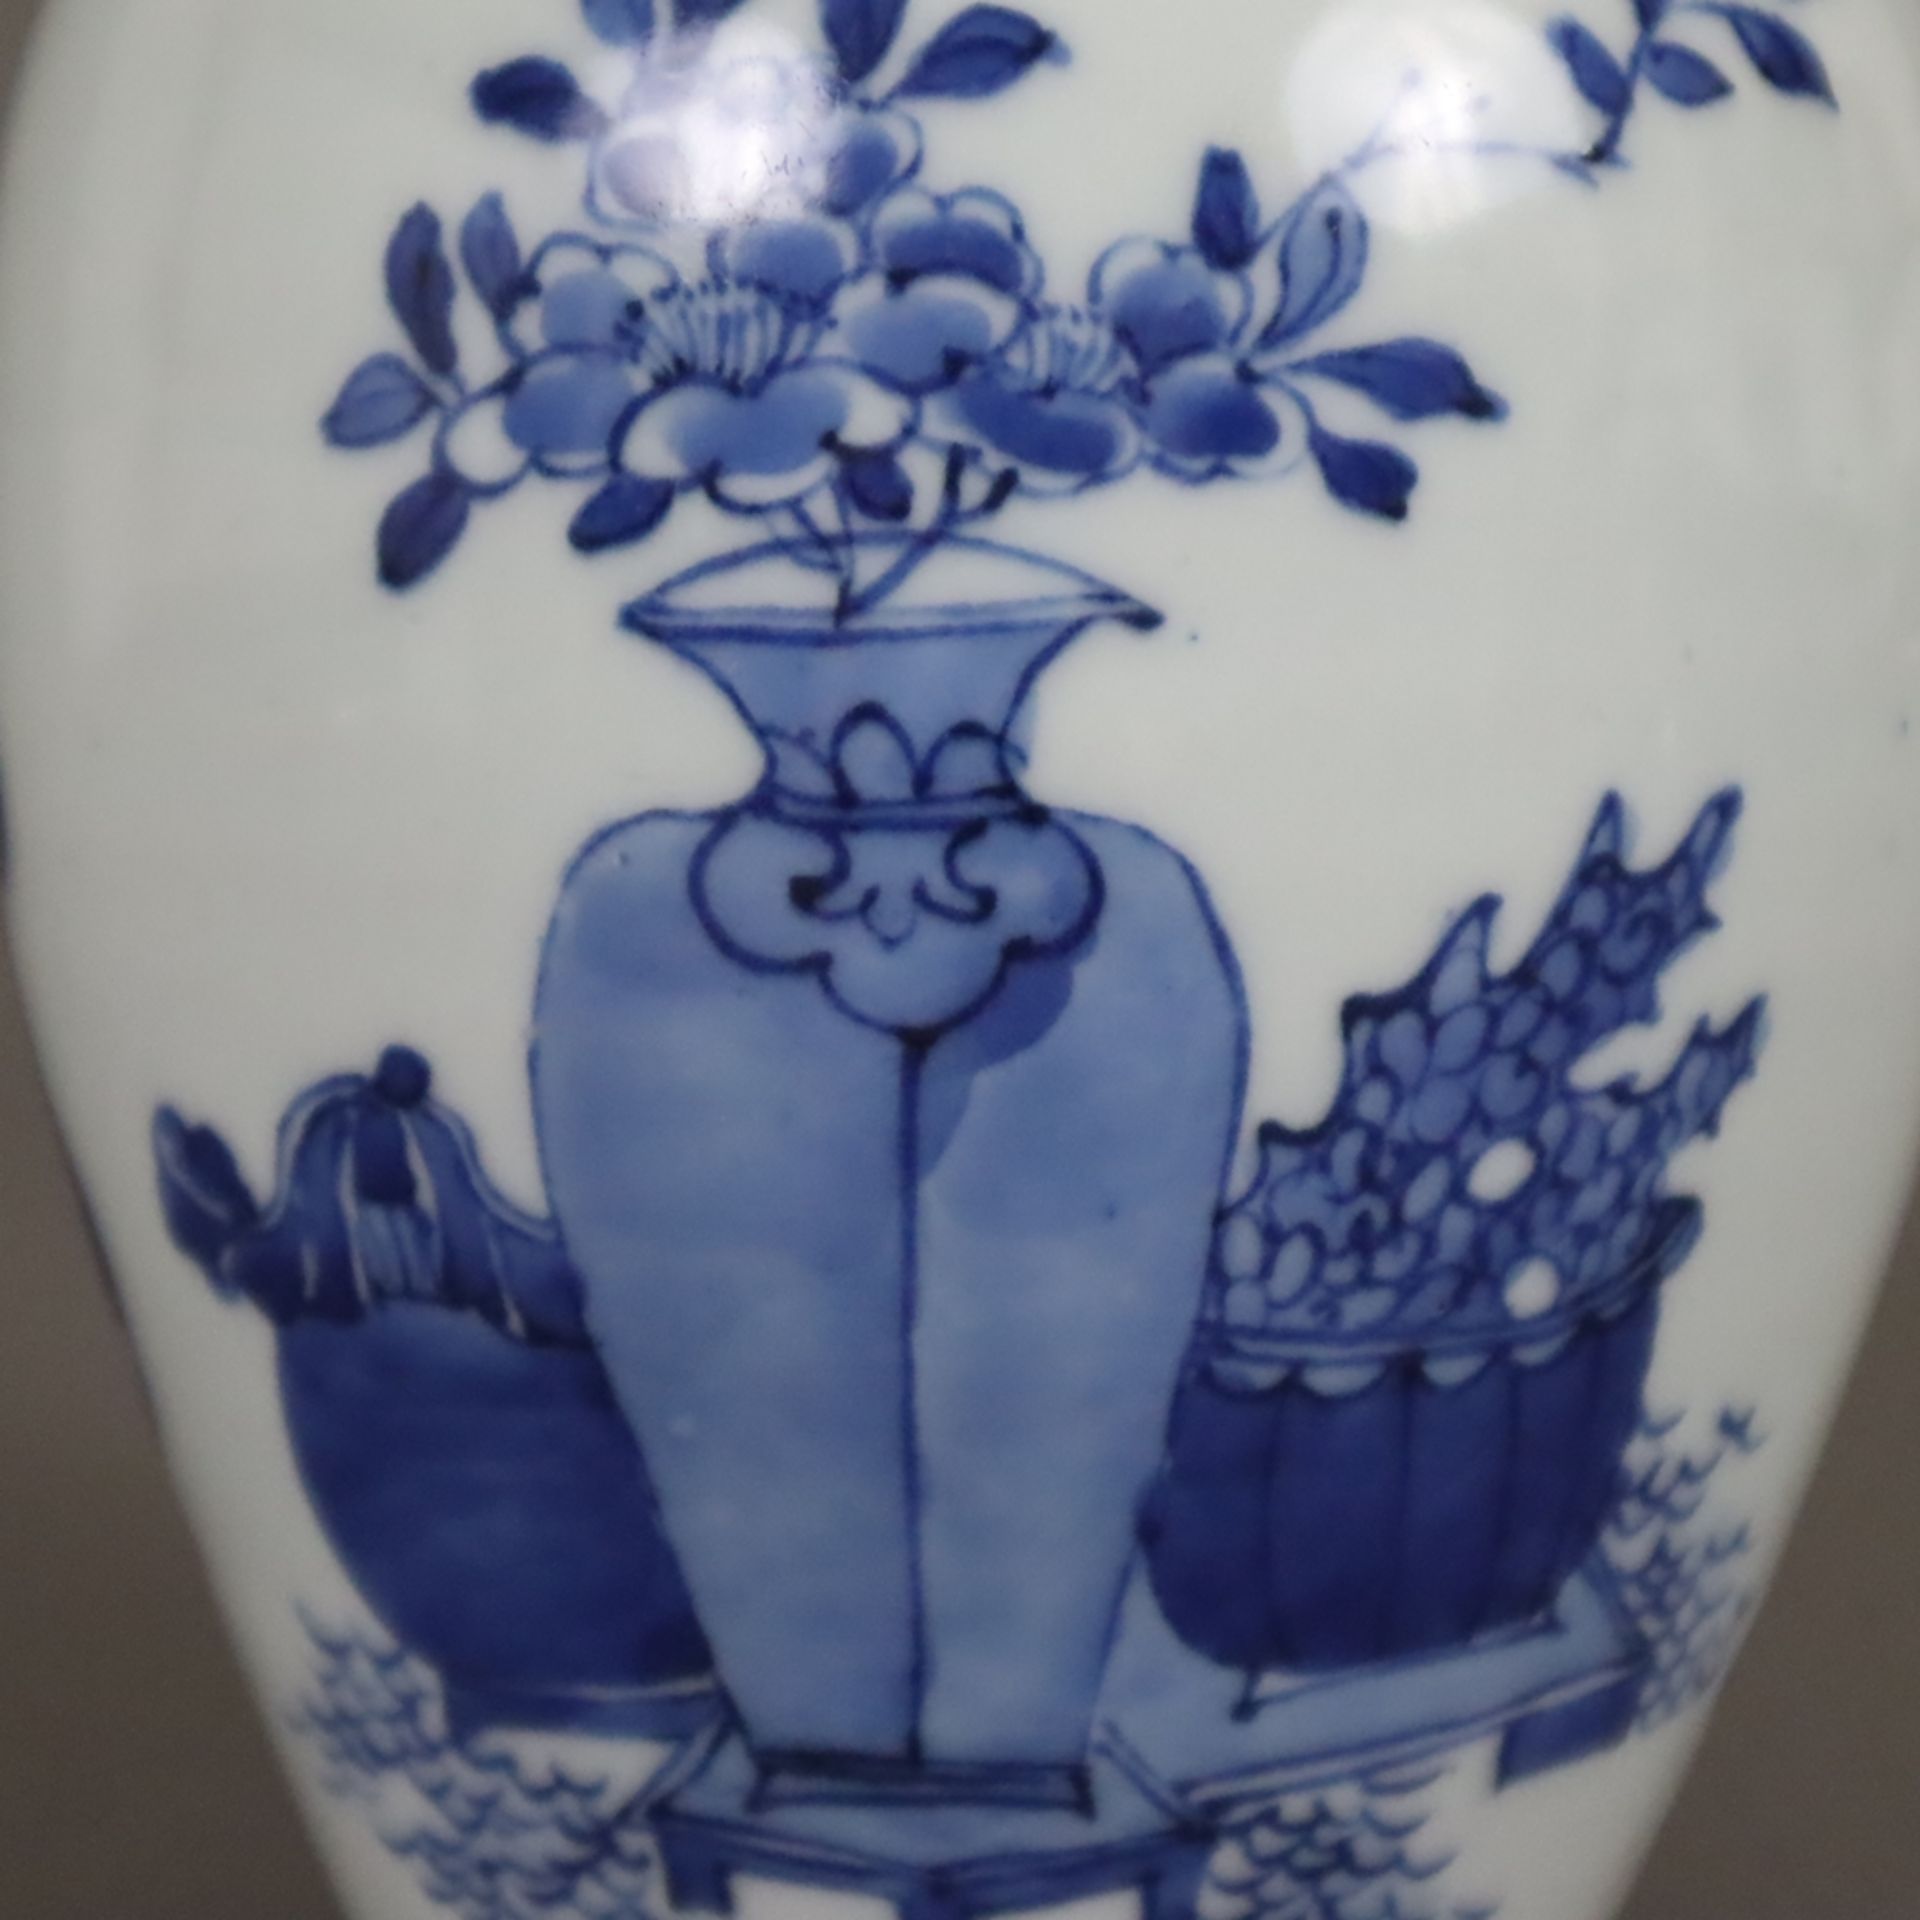 Blau-weiße Vase - China, Qing-Dynastie, Porzellan, ovoide Form, umlaufend in Unterglasurblau bemalt - Image 4 of 8